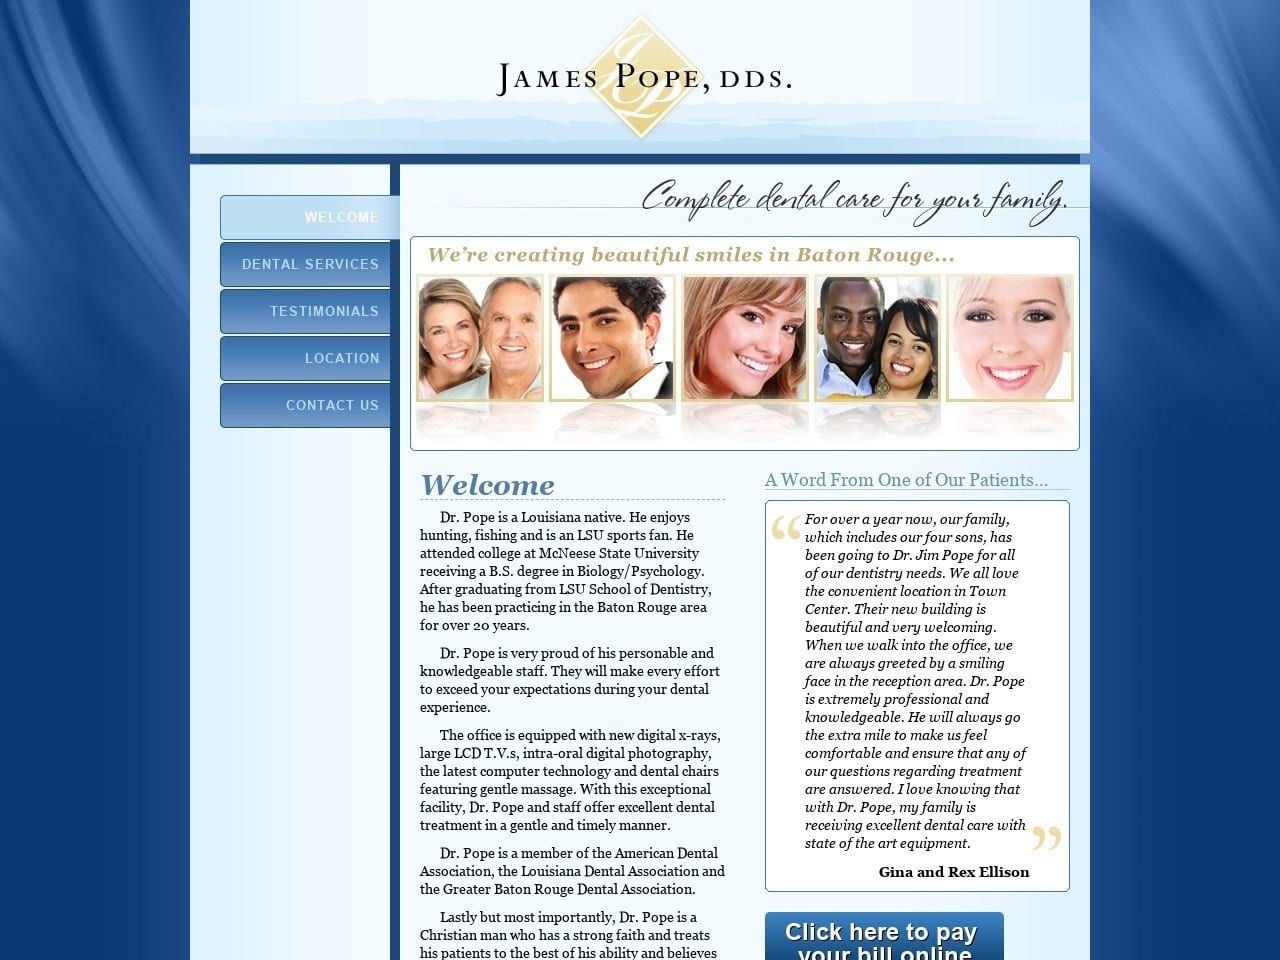 Dr. James E. Pope DDS Website Screenshot from jamespopedds.com